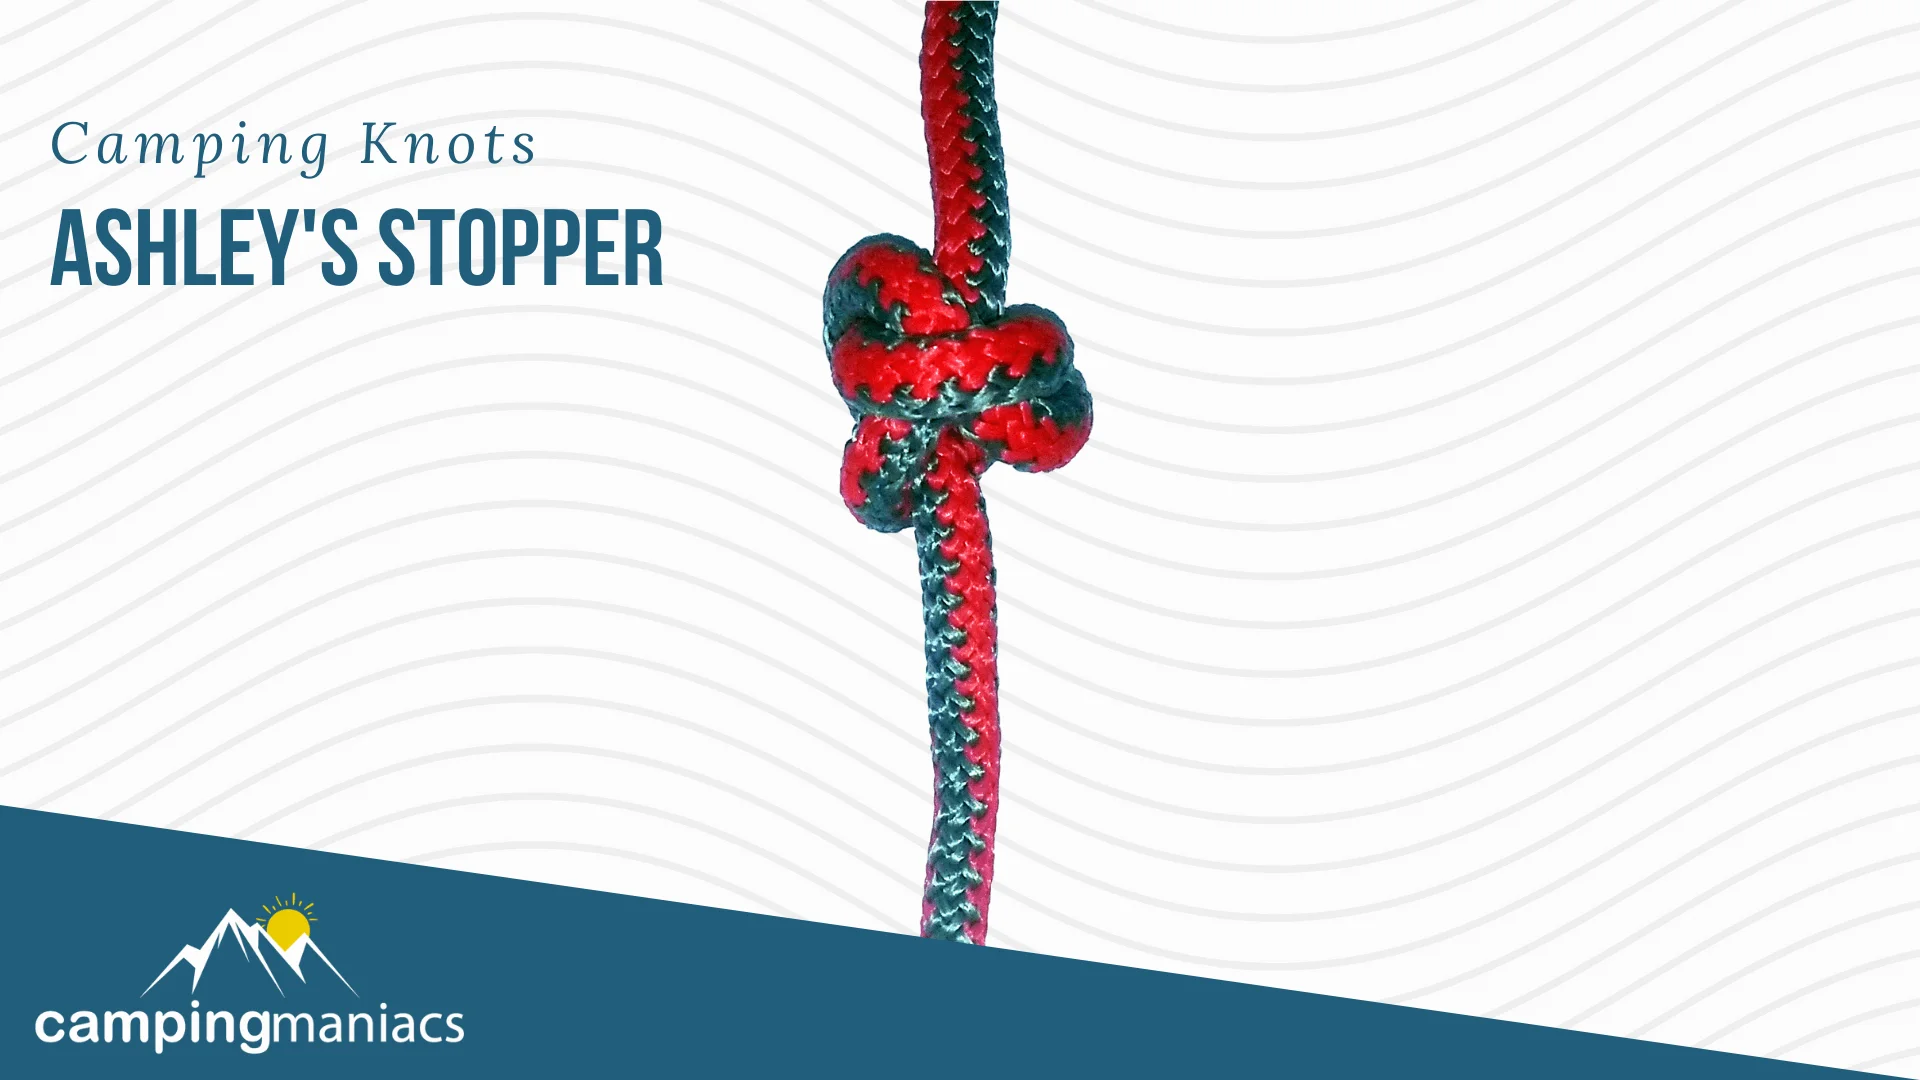 ashley's stopper knot